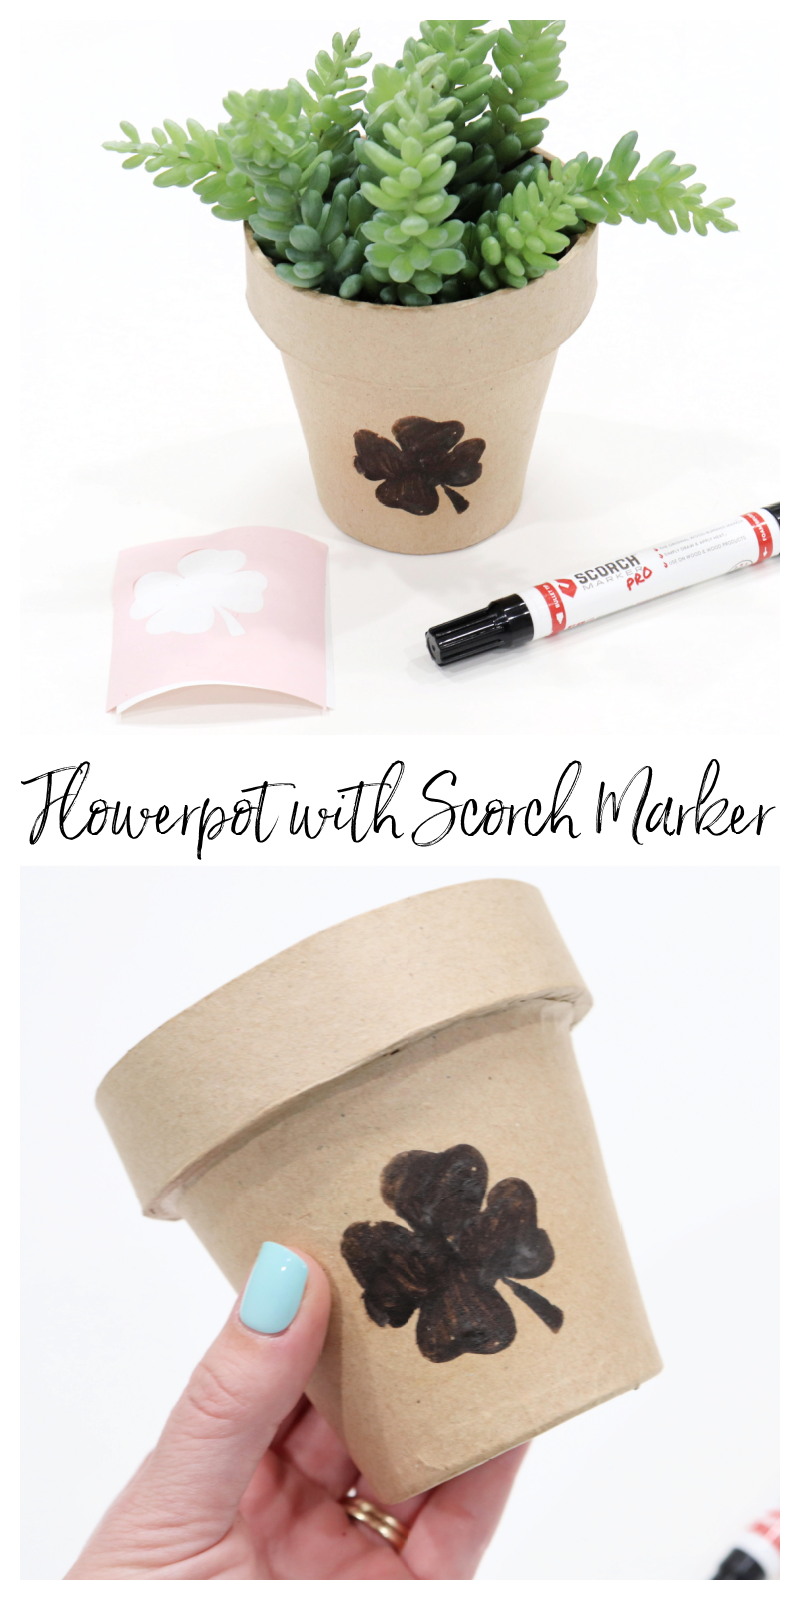 Clover Flowerpot with Scorch Marker